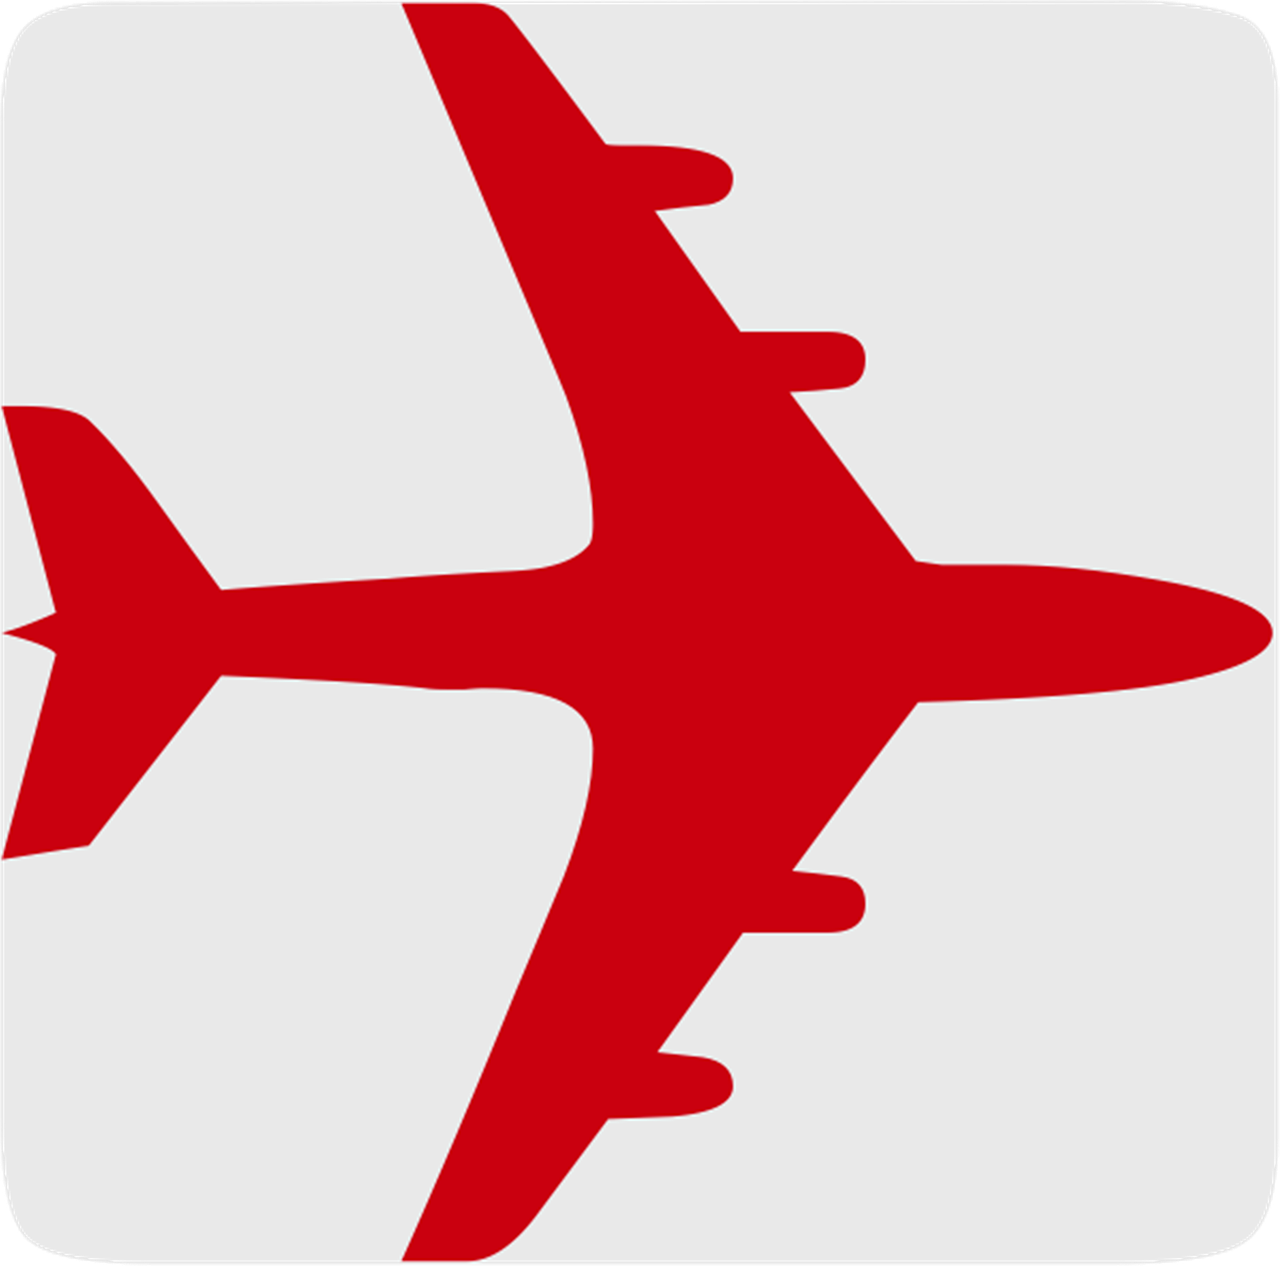 Lėktuvas, Oras, Lėktuvas, Skrydis, Visuotinis, Tarptautinis, Gabenimas, Rezervavimas, Transportas, Turizmas